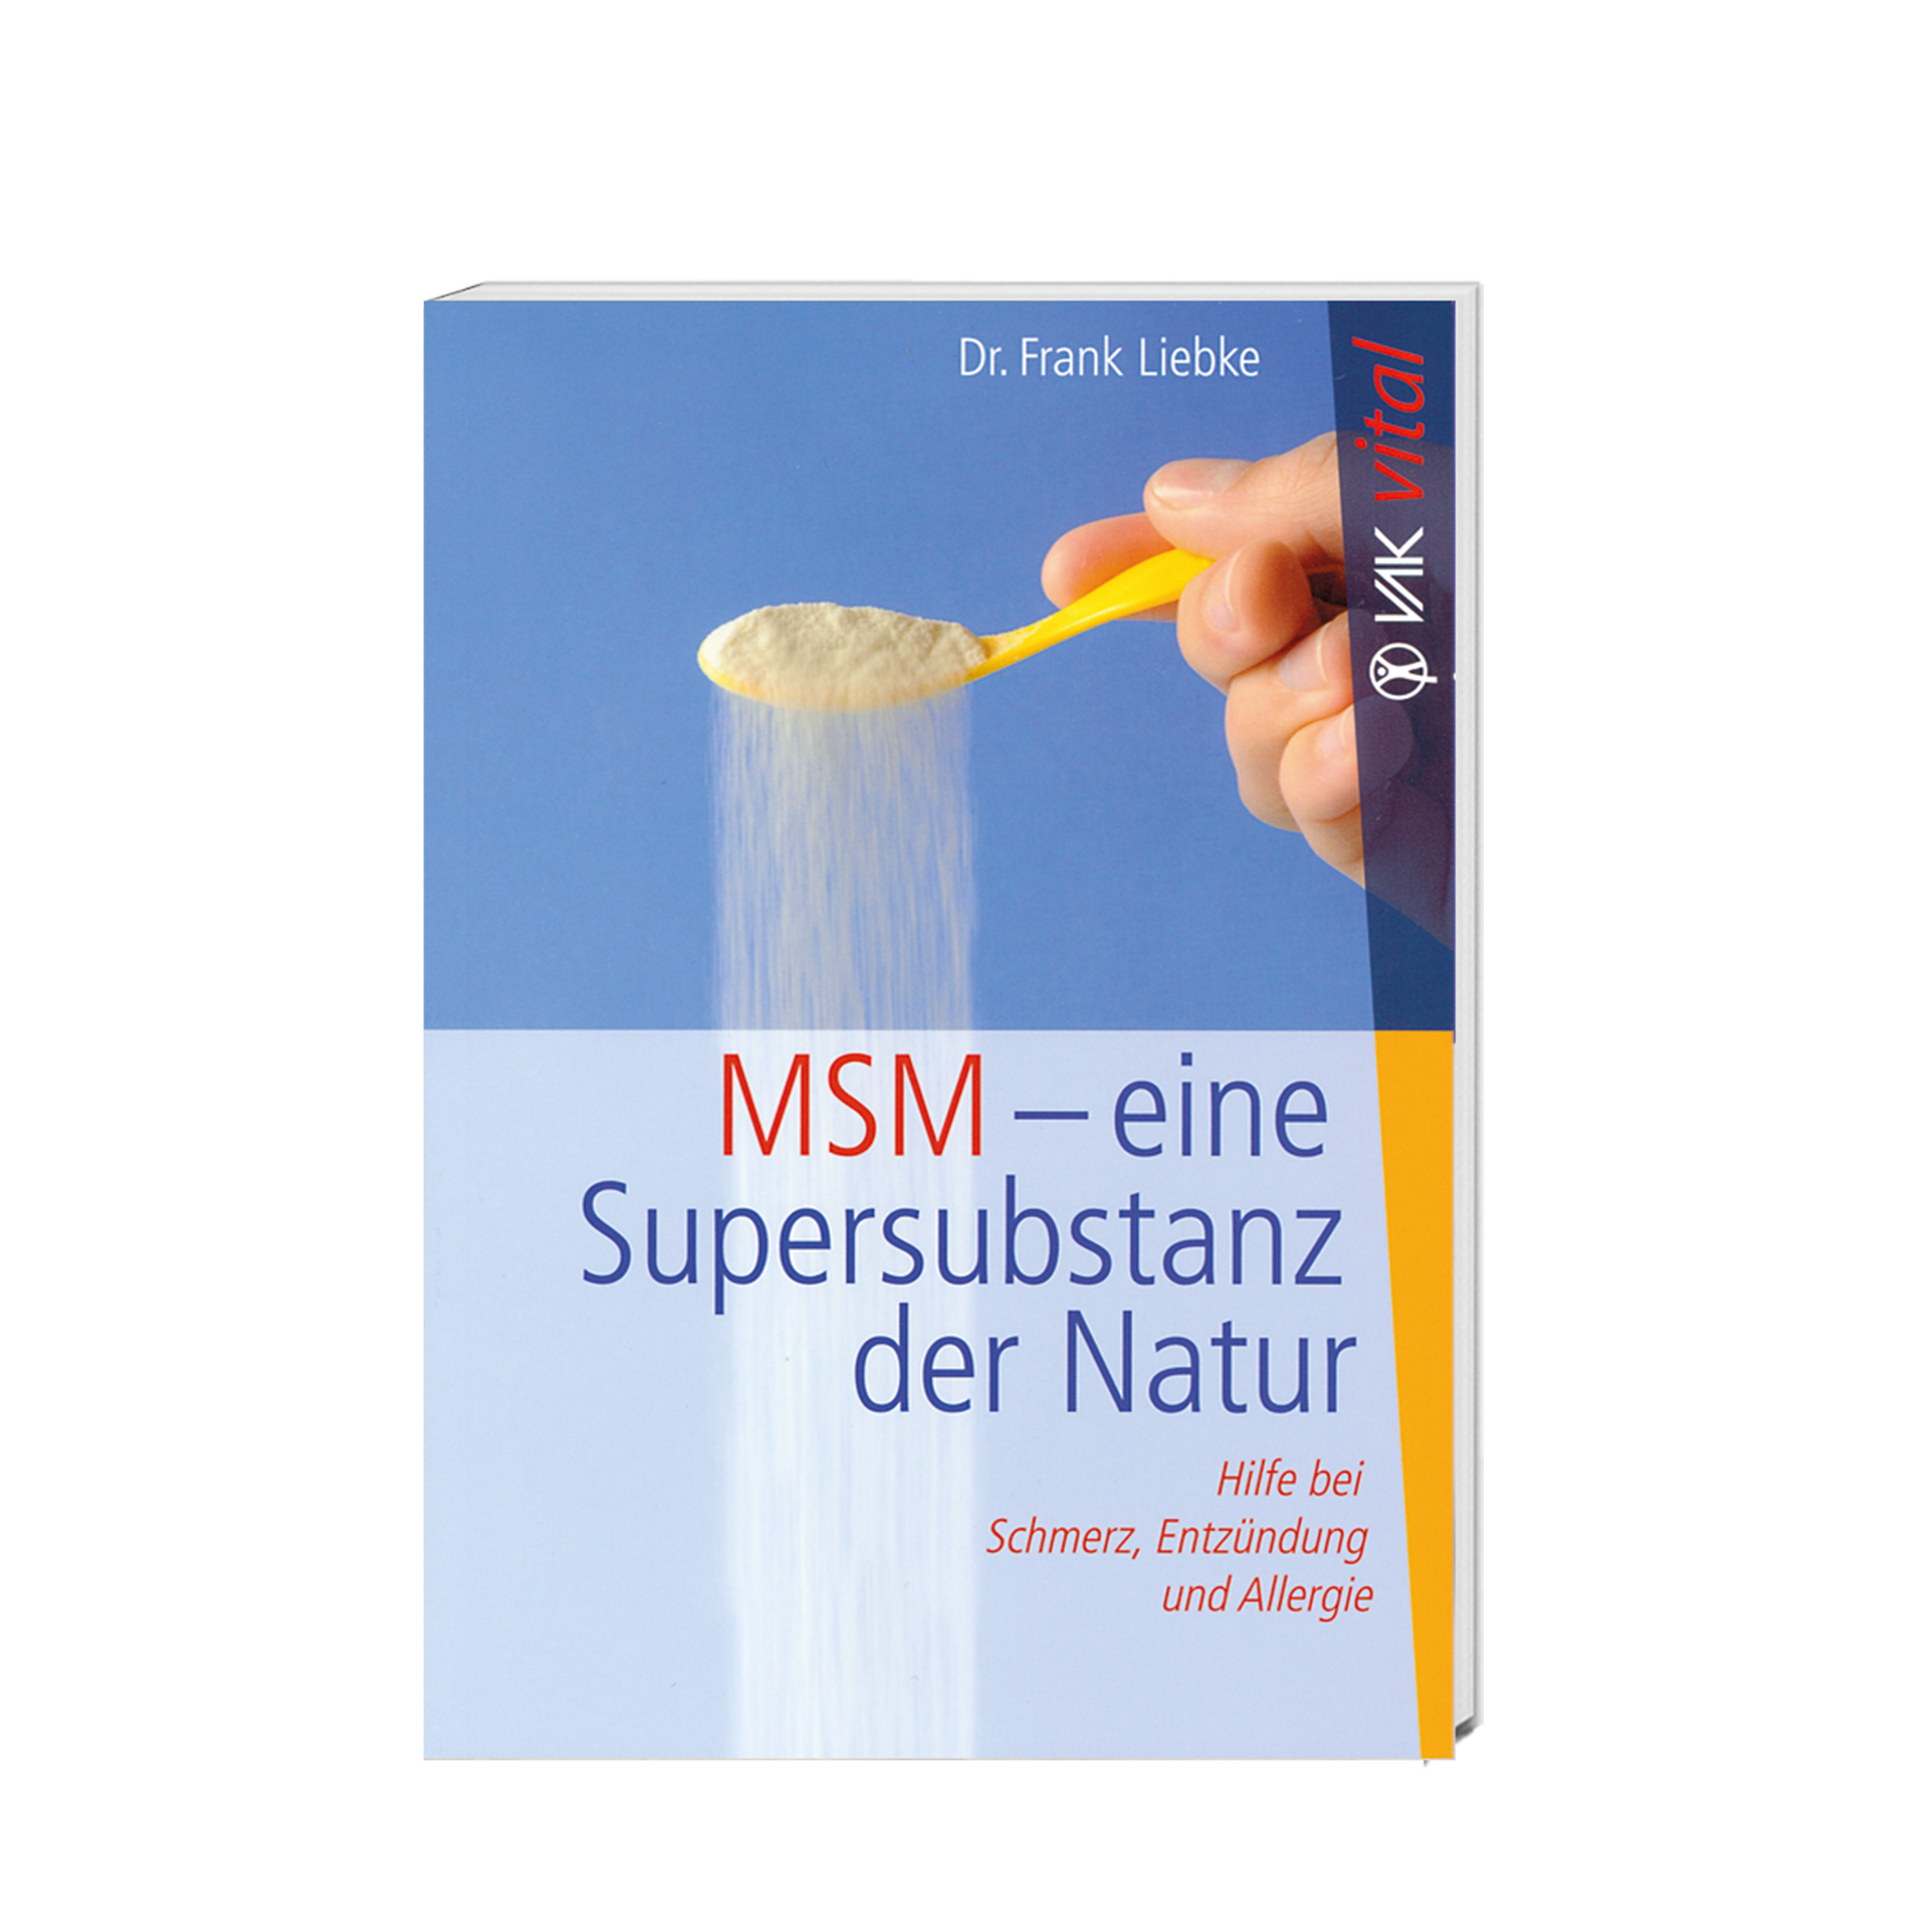 MSM eine super Substanz der Natur, 86 Seiten